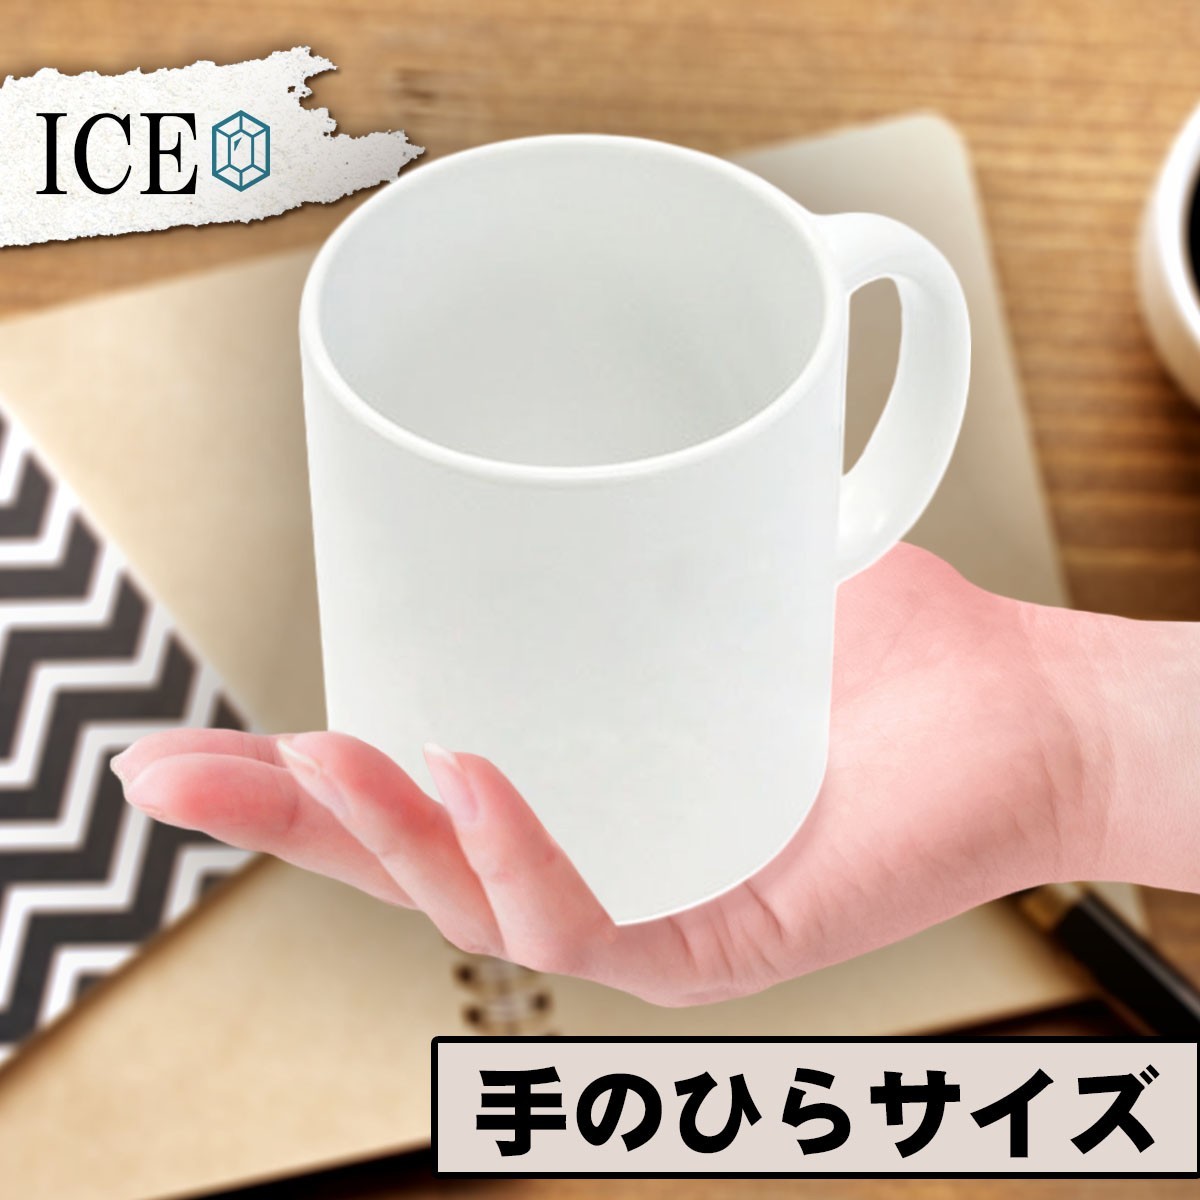 つけ おもしろ マグカップ コップ 陶器 可愛い かわいい 白 シンプル かわいい カッコイイ シュール 面白い ジョーク ゆるい プレゼント プ_画像2